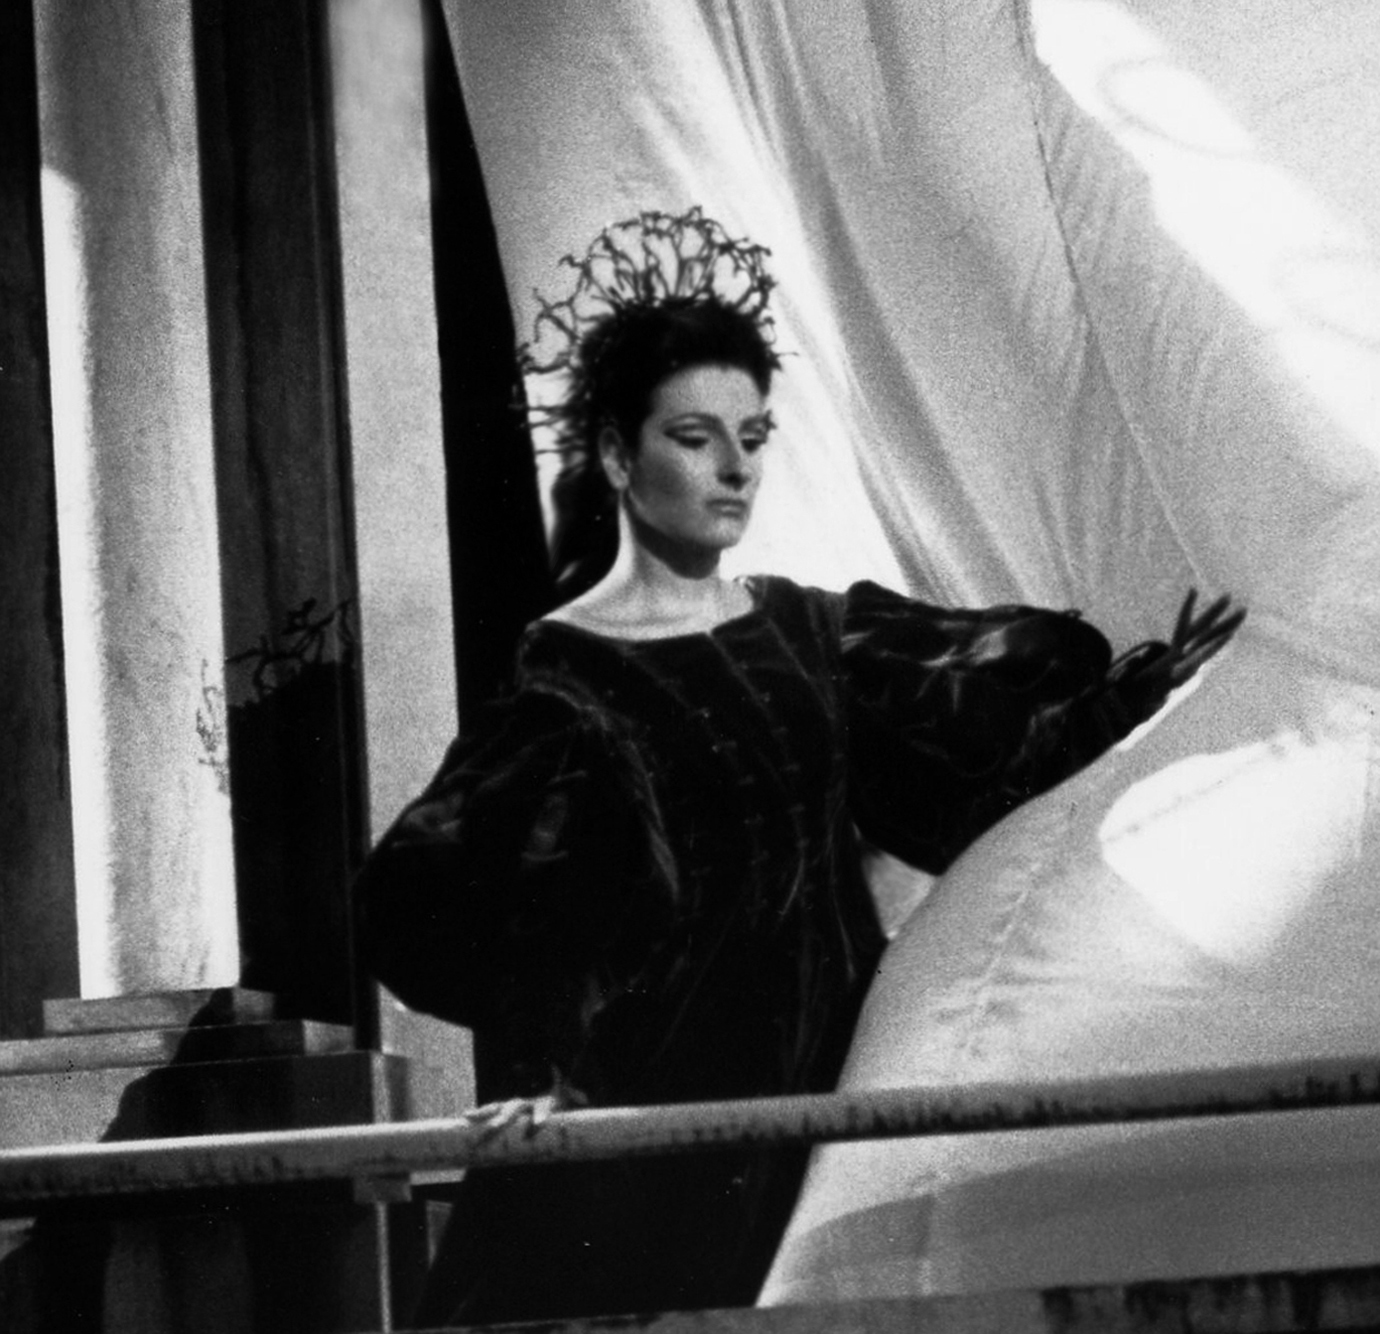 Lucia Aliberti⚘Festival Vaison La Romaine⚘Vaison La Romaine⚘Opera⚘"I Capuleti e I Montecchi"⚘On Stage⚘:http://www.luciaaliberti.it #luciaaliberti #festivalvaisonlaromaine #vaisonlaromaine #icapuletieimontecchi #opera #onstage